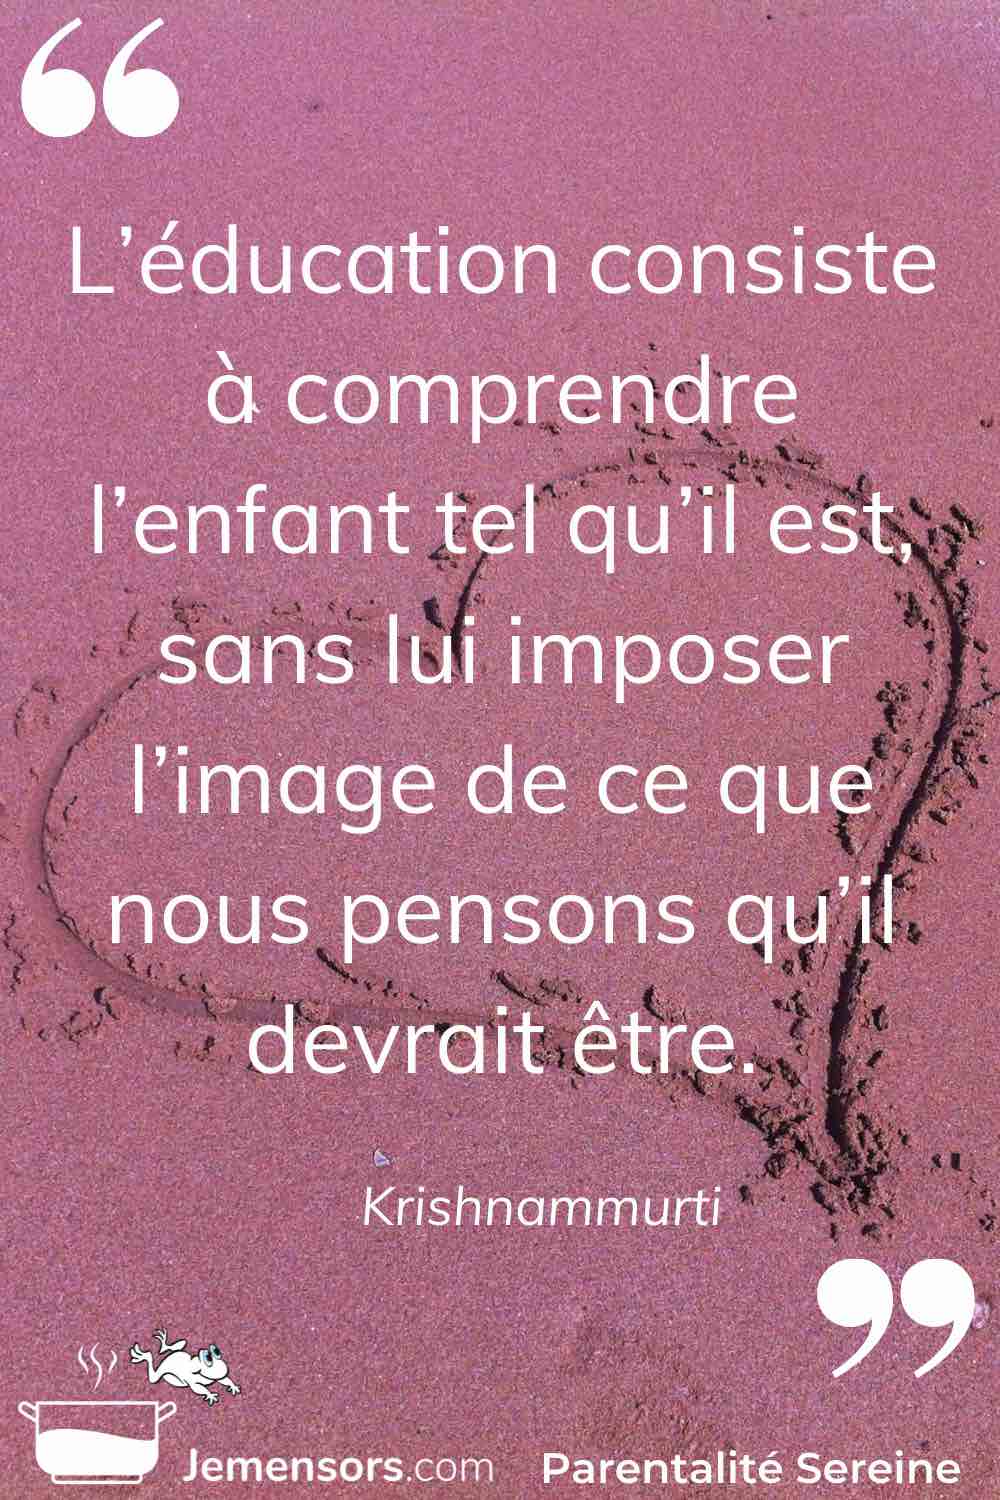 "L’éducation consiste à comprendre l’enfant tel qu’il est sans lui imposer l’image de ce que nous pensons qu’il devrait être." Krishnammurti